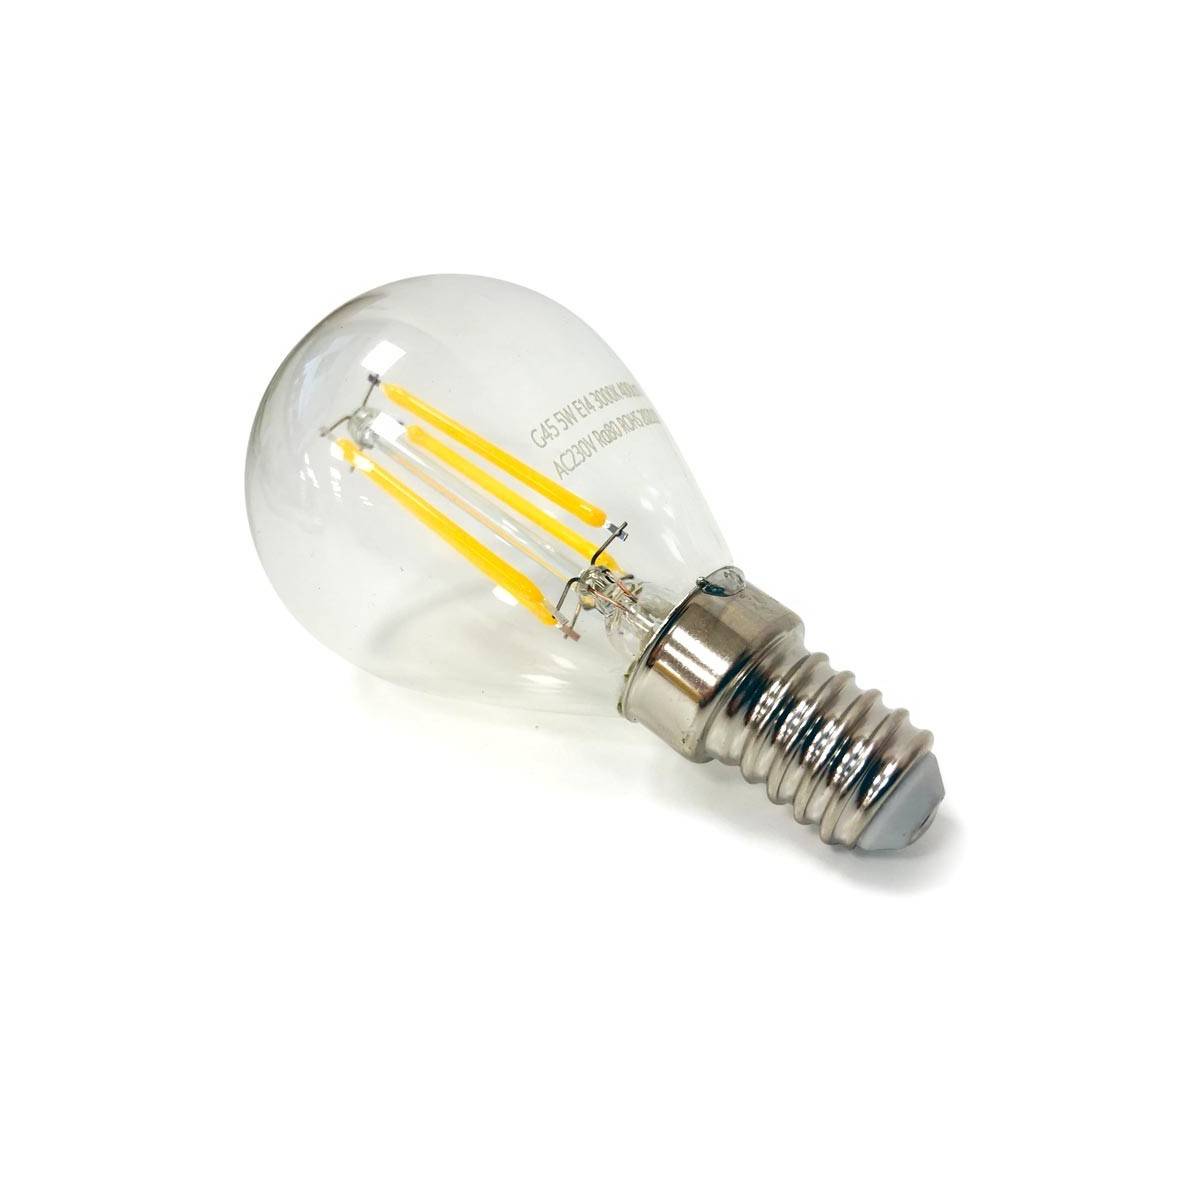 Nuevo artículo en linea: la bombilla de filamento G45 E14 - Ecoluz LED